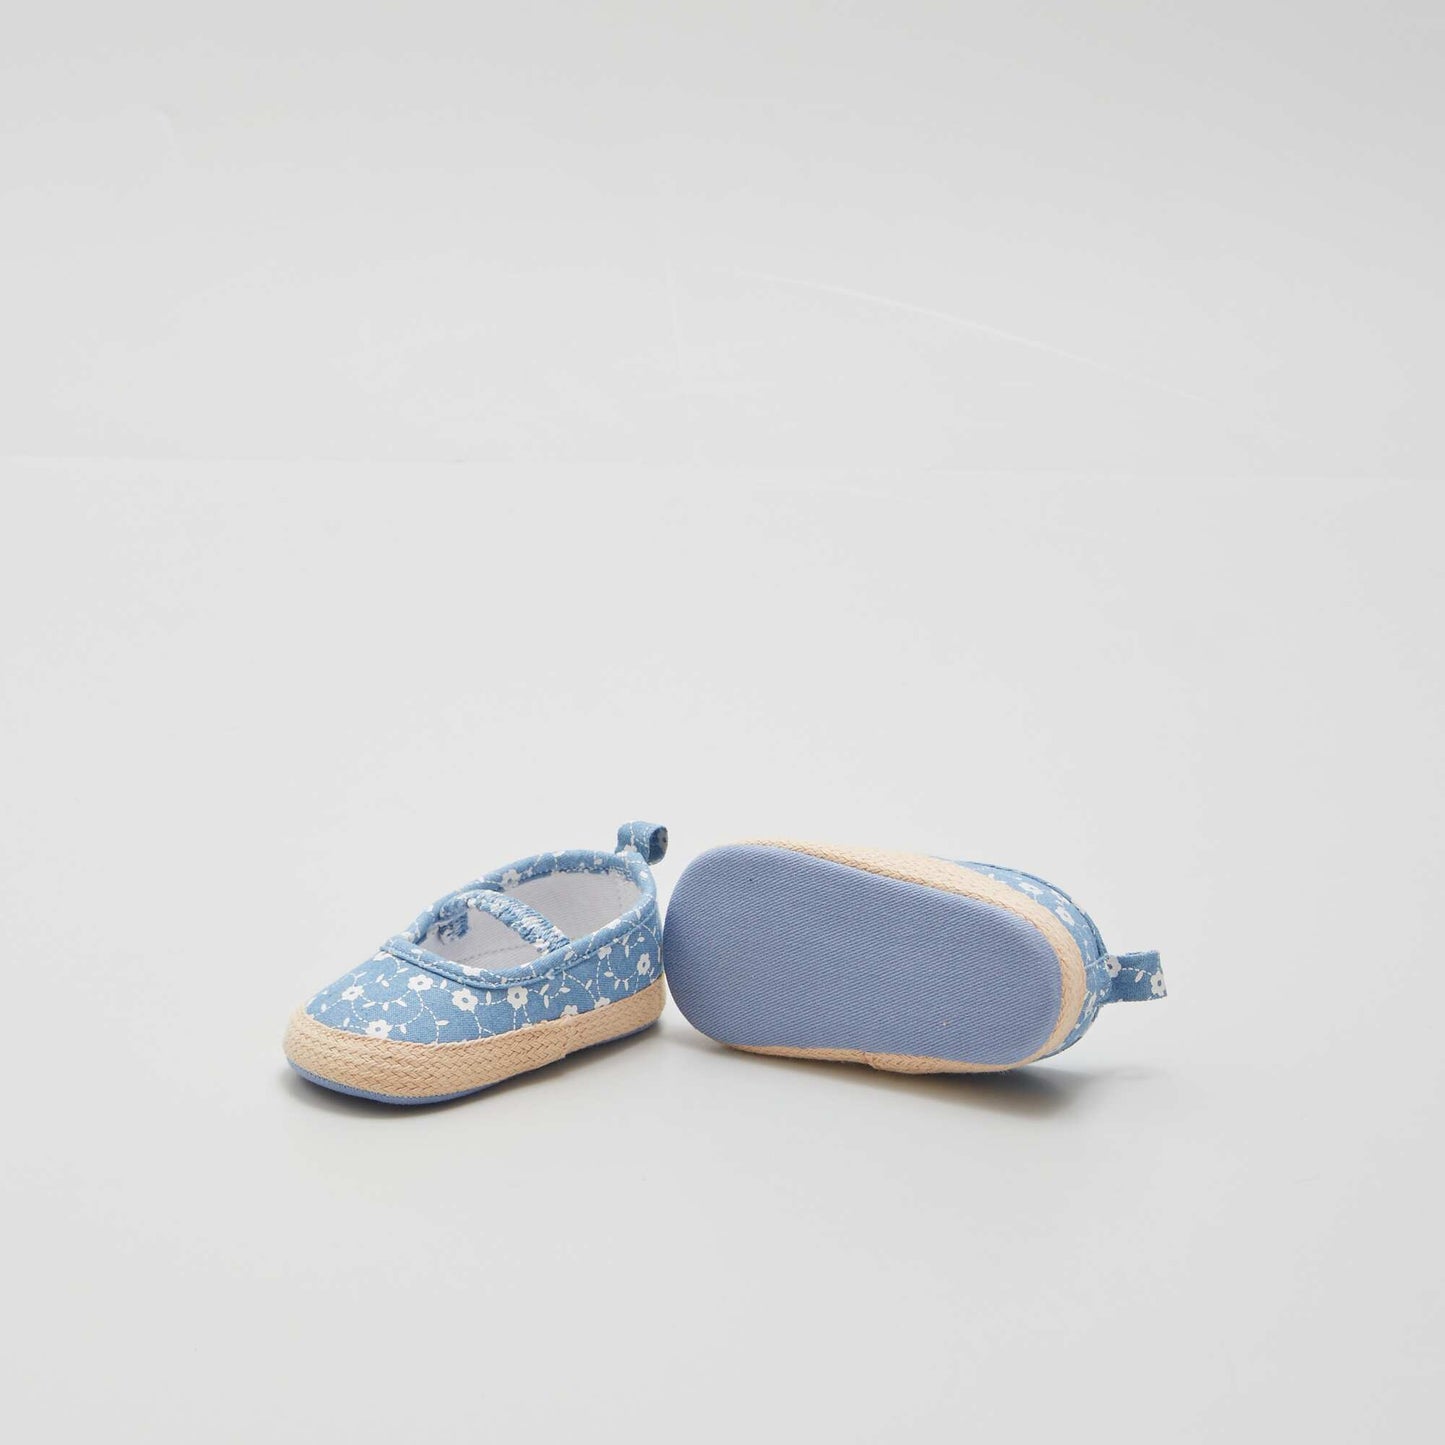 Sandales imprimées style espadrilles Bleu